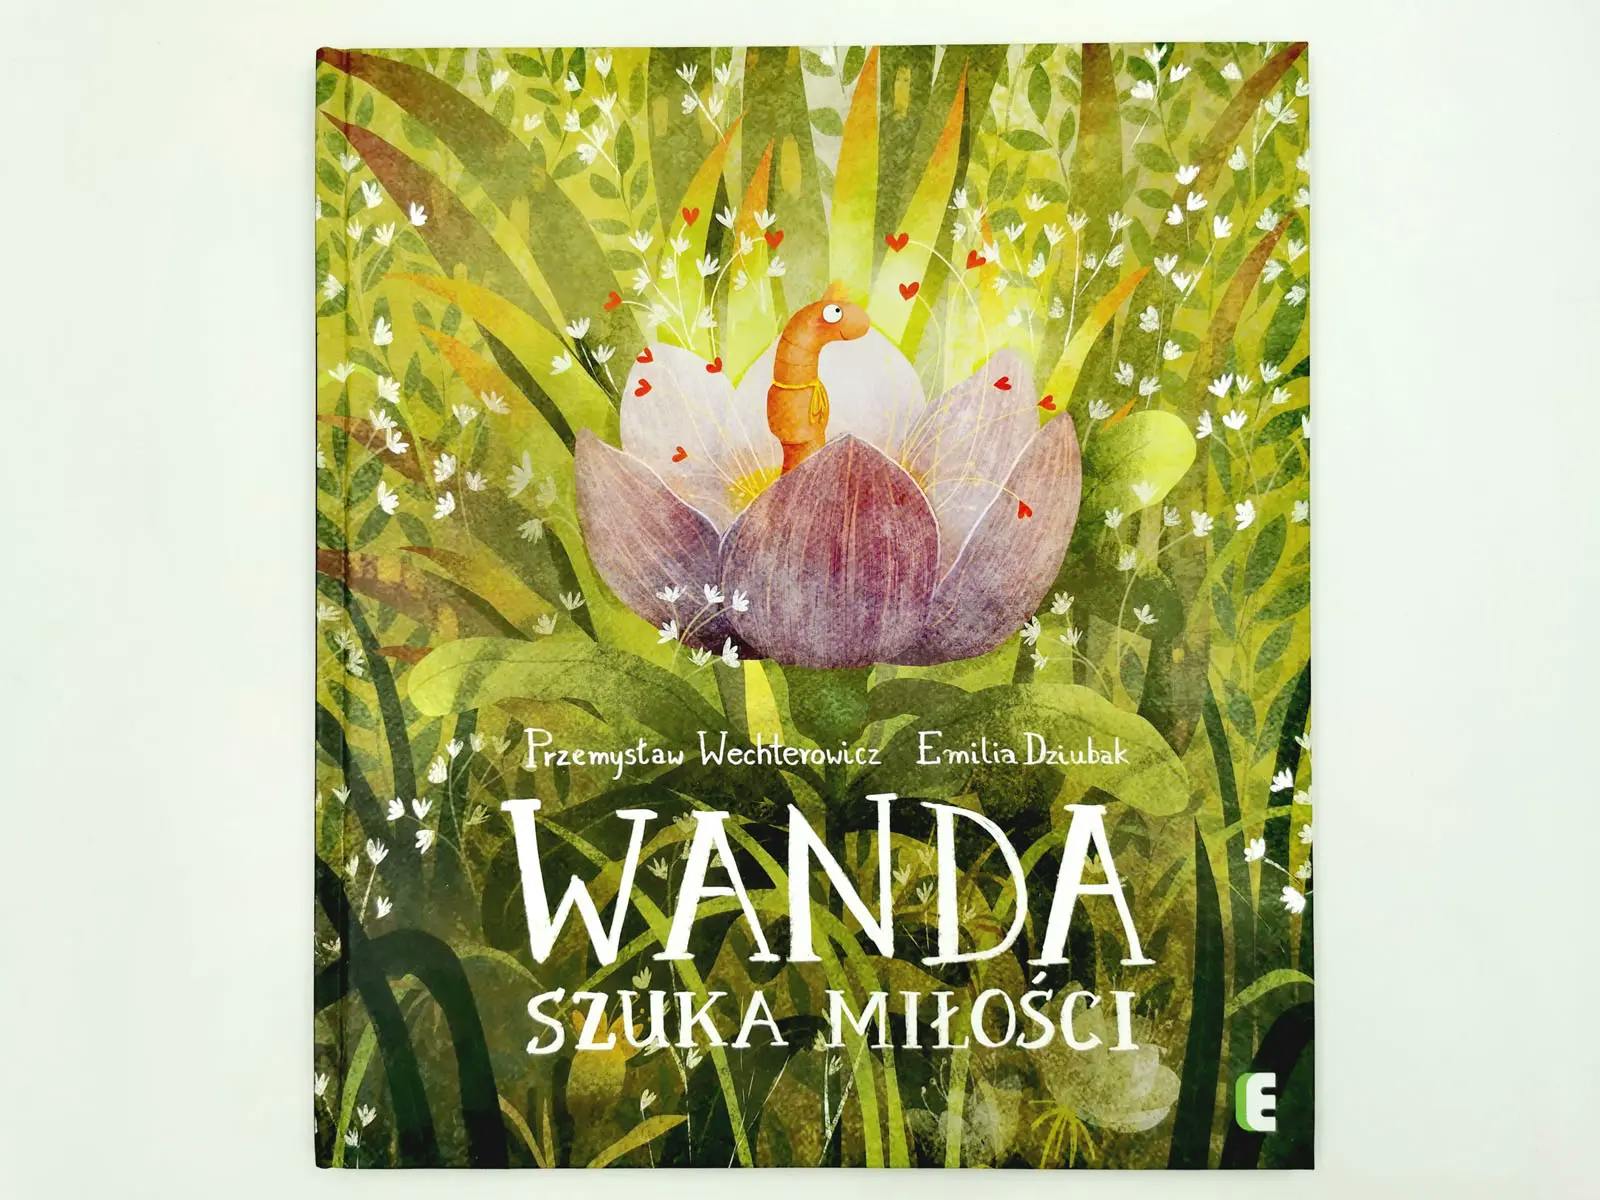 Wanda szuka miłości